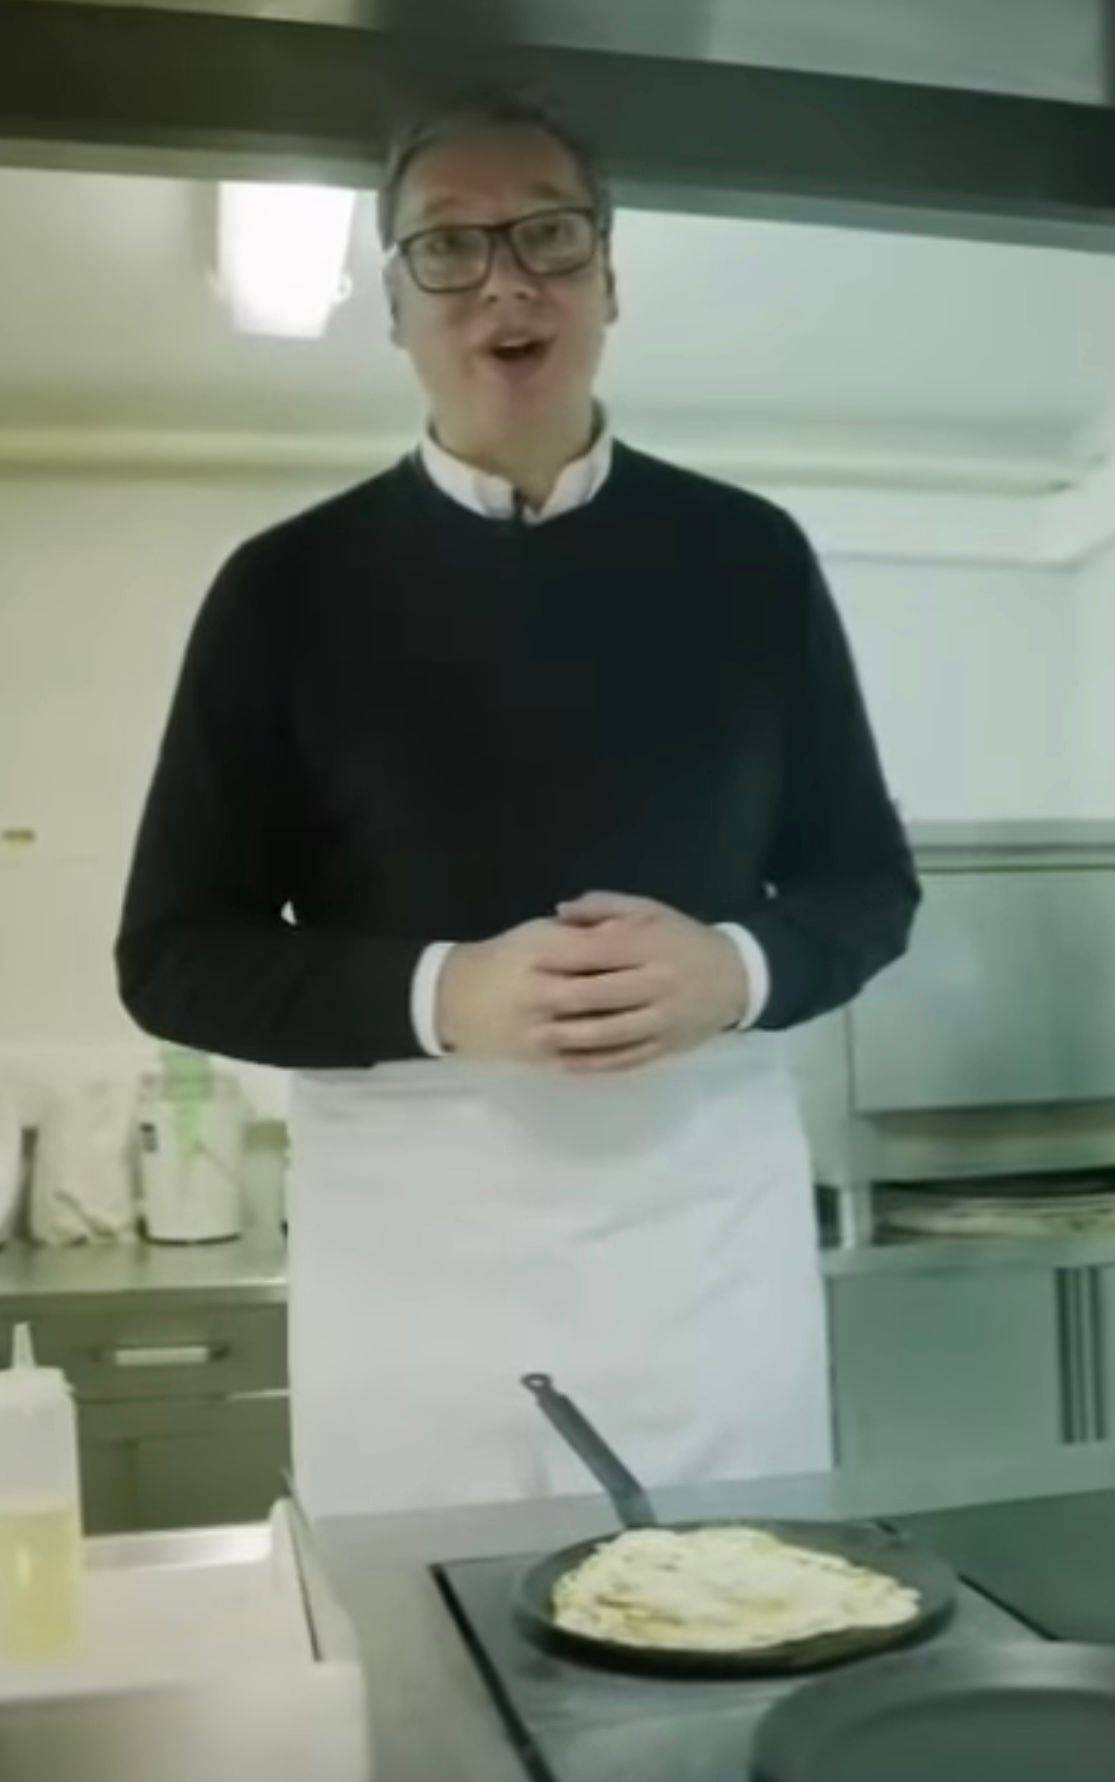 VIDEO Vučić pokazao kako vrti palačinke: E, uništio sam oblik, ova će biti za mene. Smiju mi se